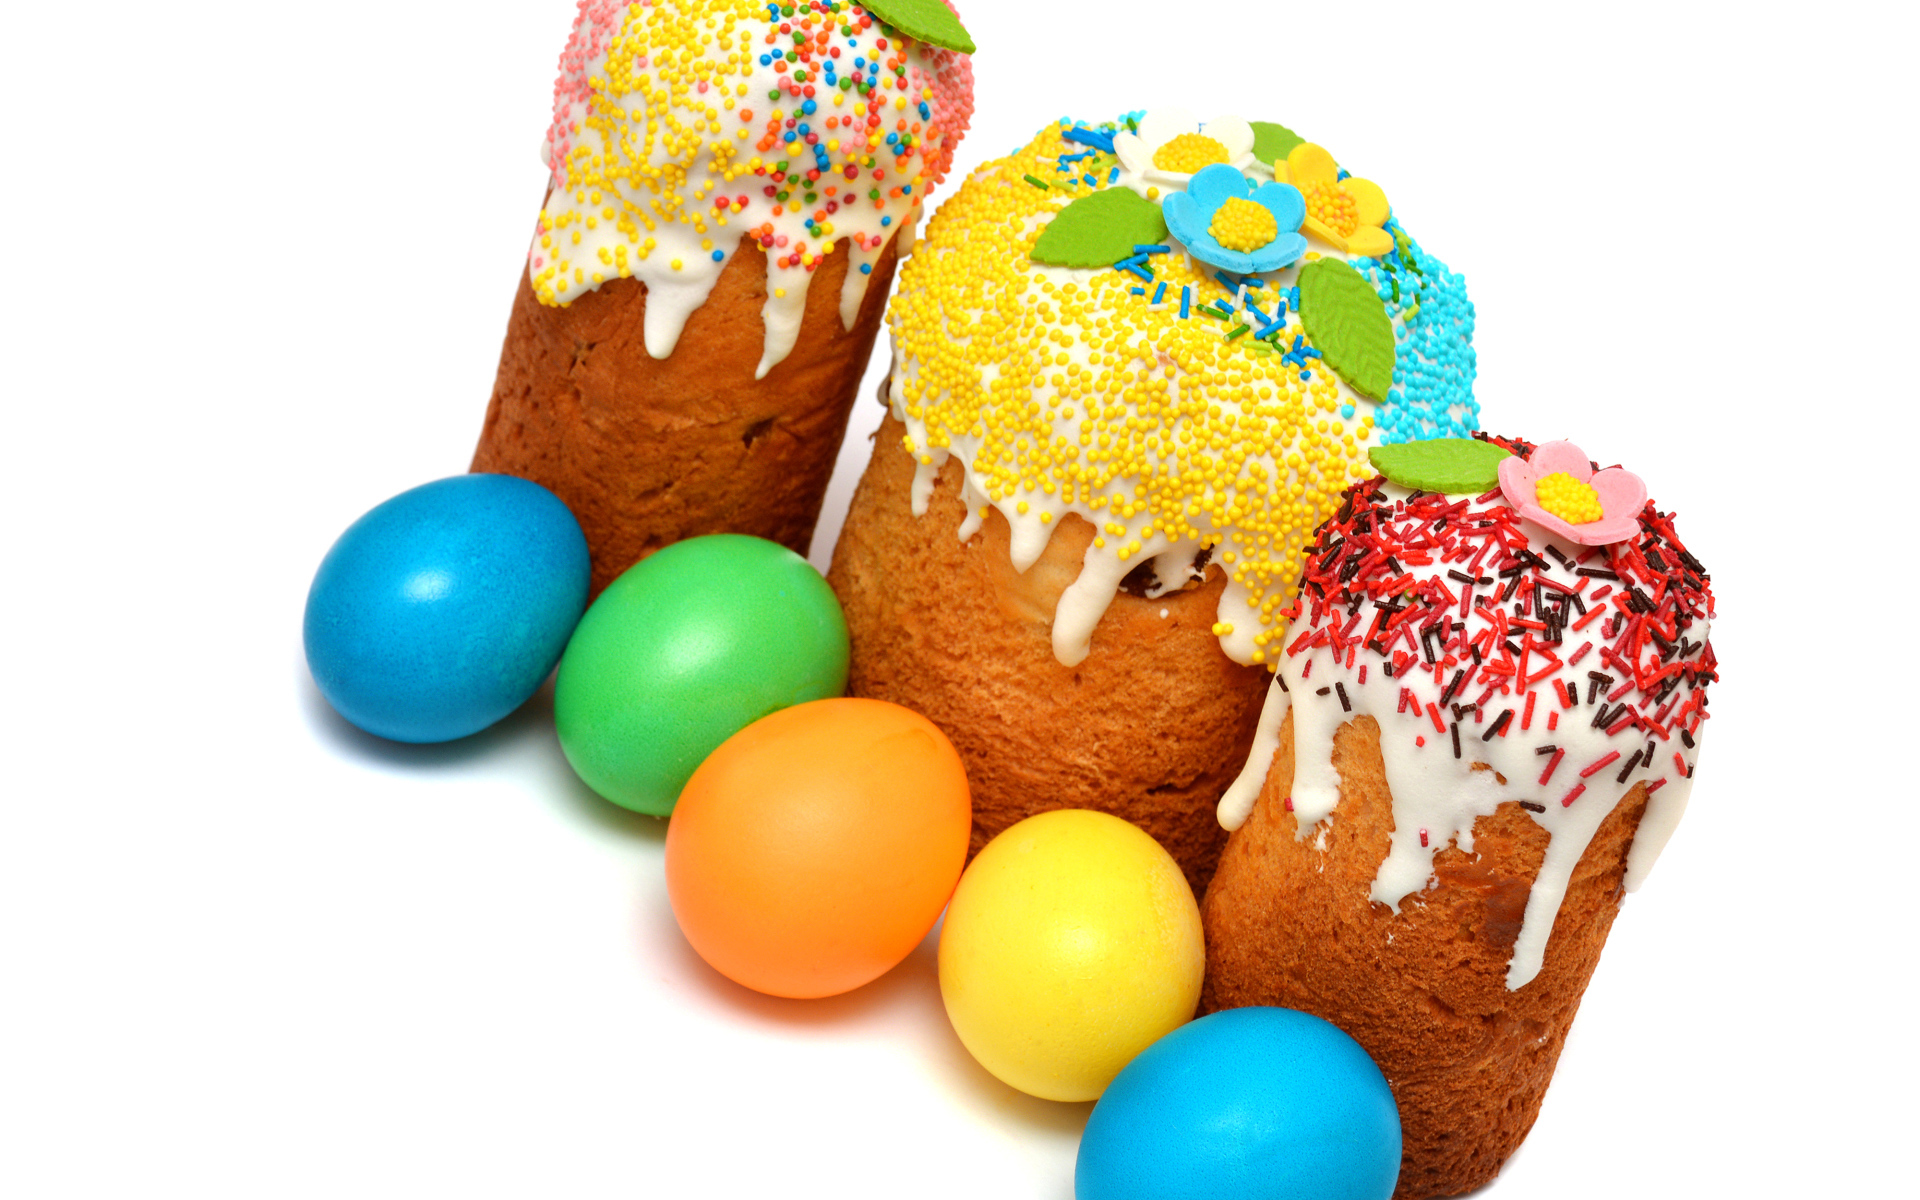 Три кулича с крашеными яйцами на белом фоне к празднику Пасха